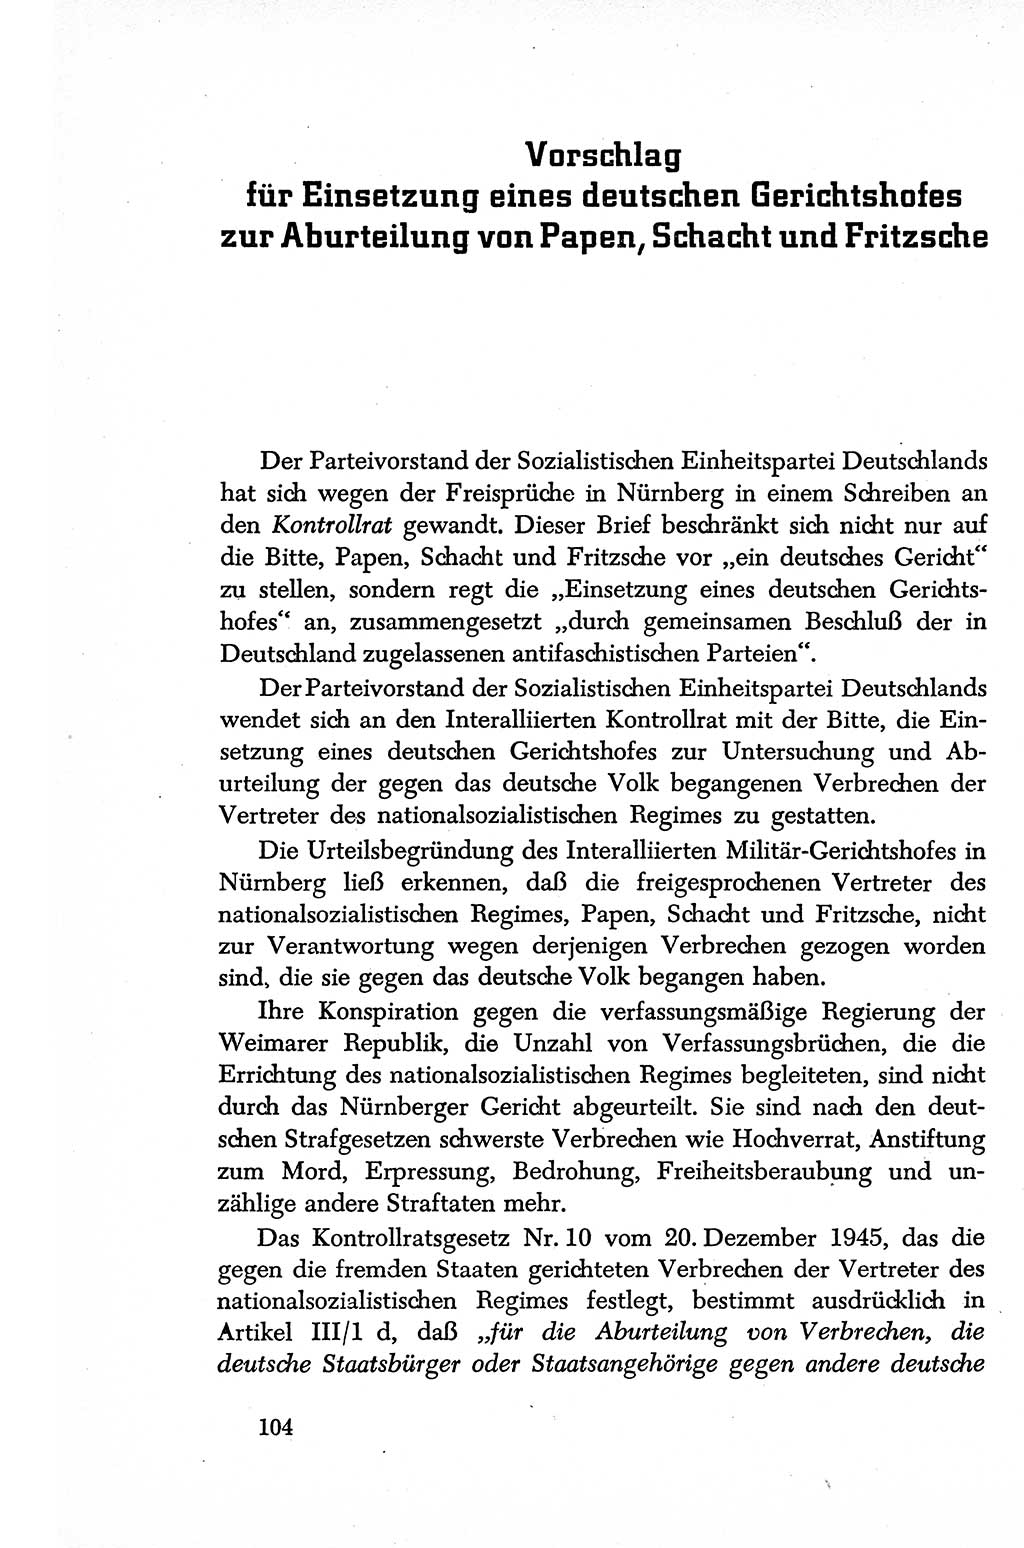 Dokumente der Sozialistischen Einheitspartei Deutschlands (SED) [Sowjetische Besatzungszone (SBZ) Deutschlands] 1946-1948, Seite 104 (Dok. SED SBZ Dtl. 1946-1948, S. 104)